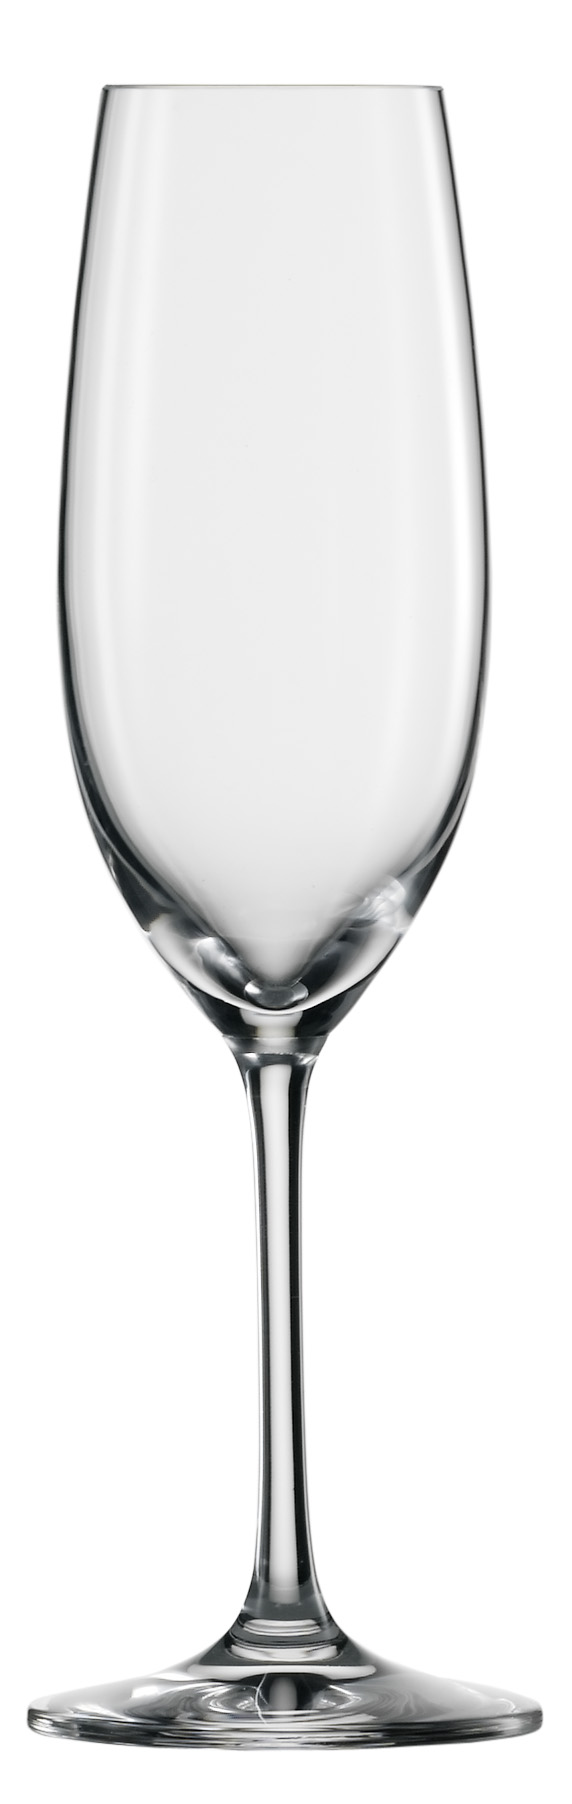 Бокал для шампанского 228 мл, h 22,2 см, d 7 см, Ivento SCHOTT ZWIESEL Ivento